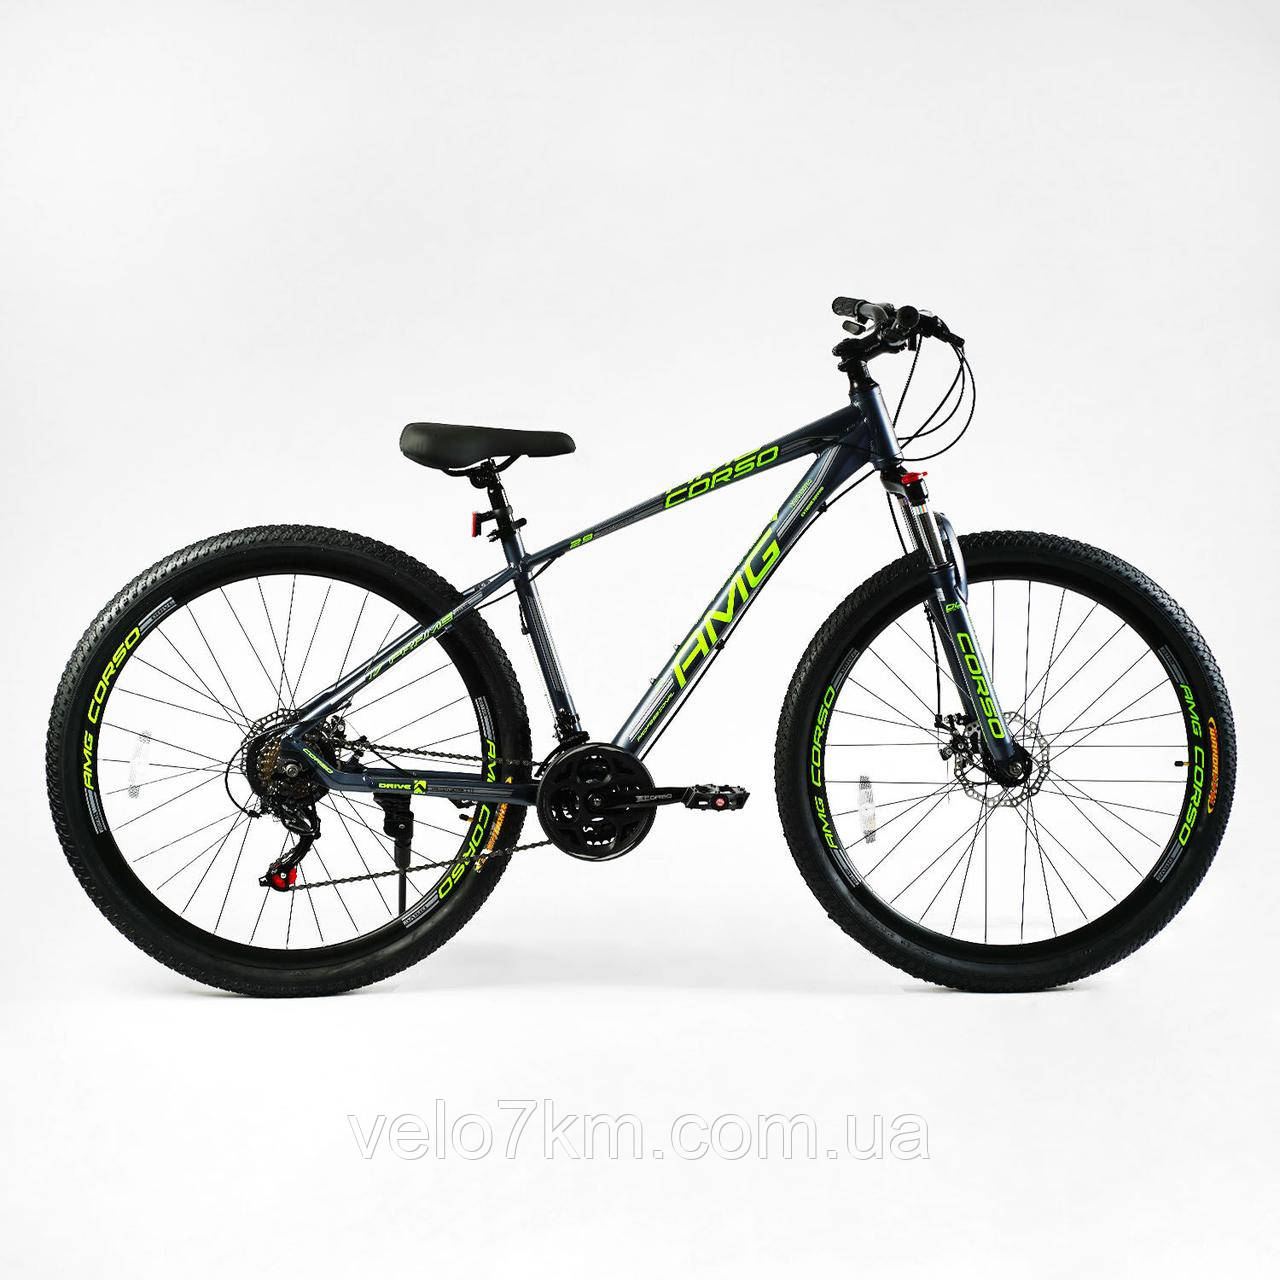 Гірський алюмінієвий велосипед Corso AMG 29" рама 17" комплектація Shimano, 21 швидкість, зібраний на 75%